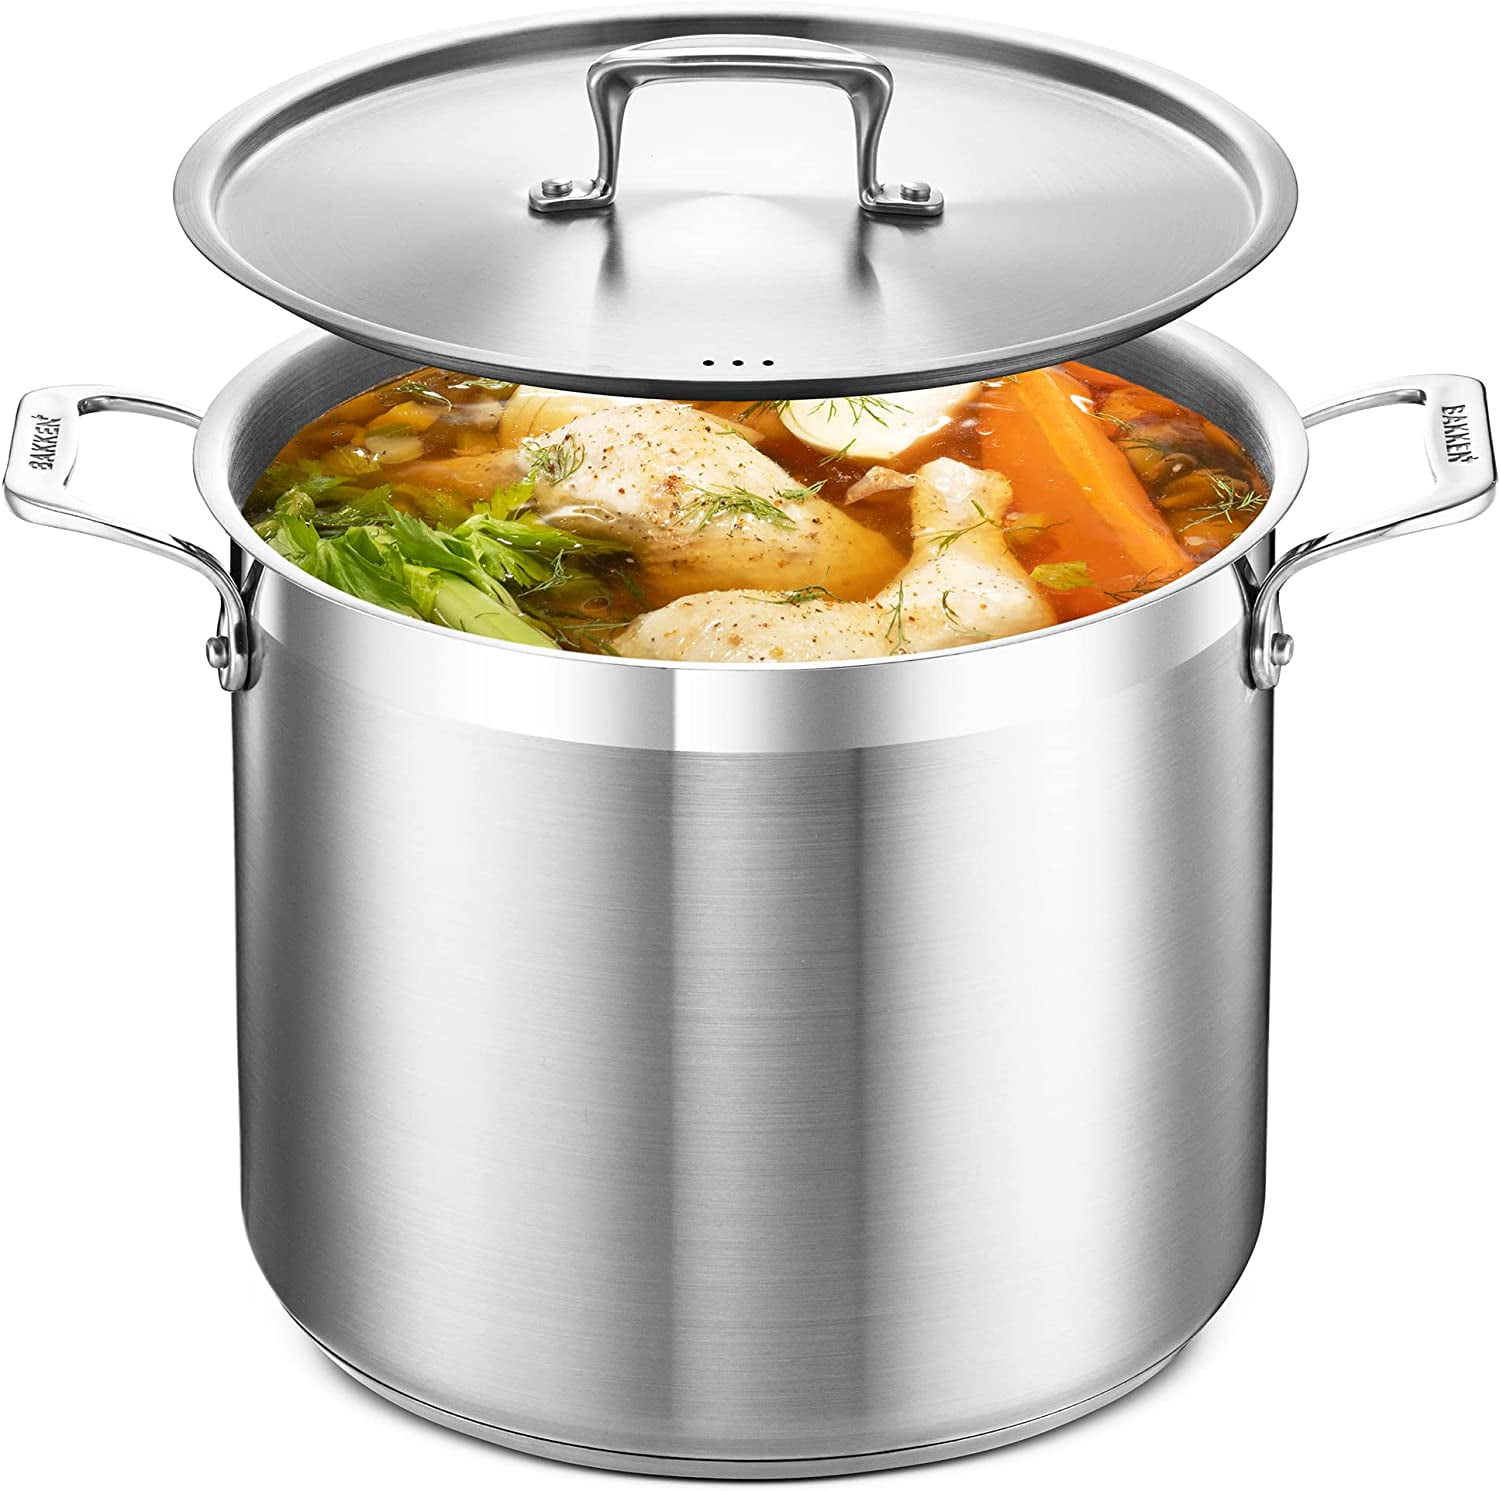 Stock Pots & Soup Pots, Large Soup & Stock Pots